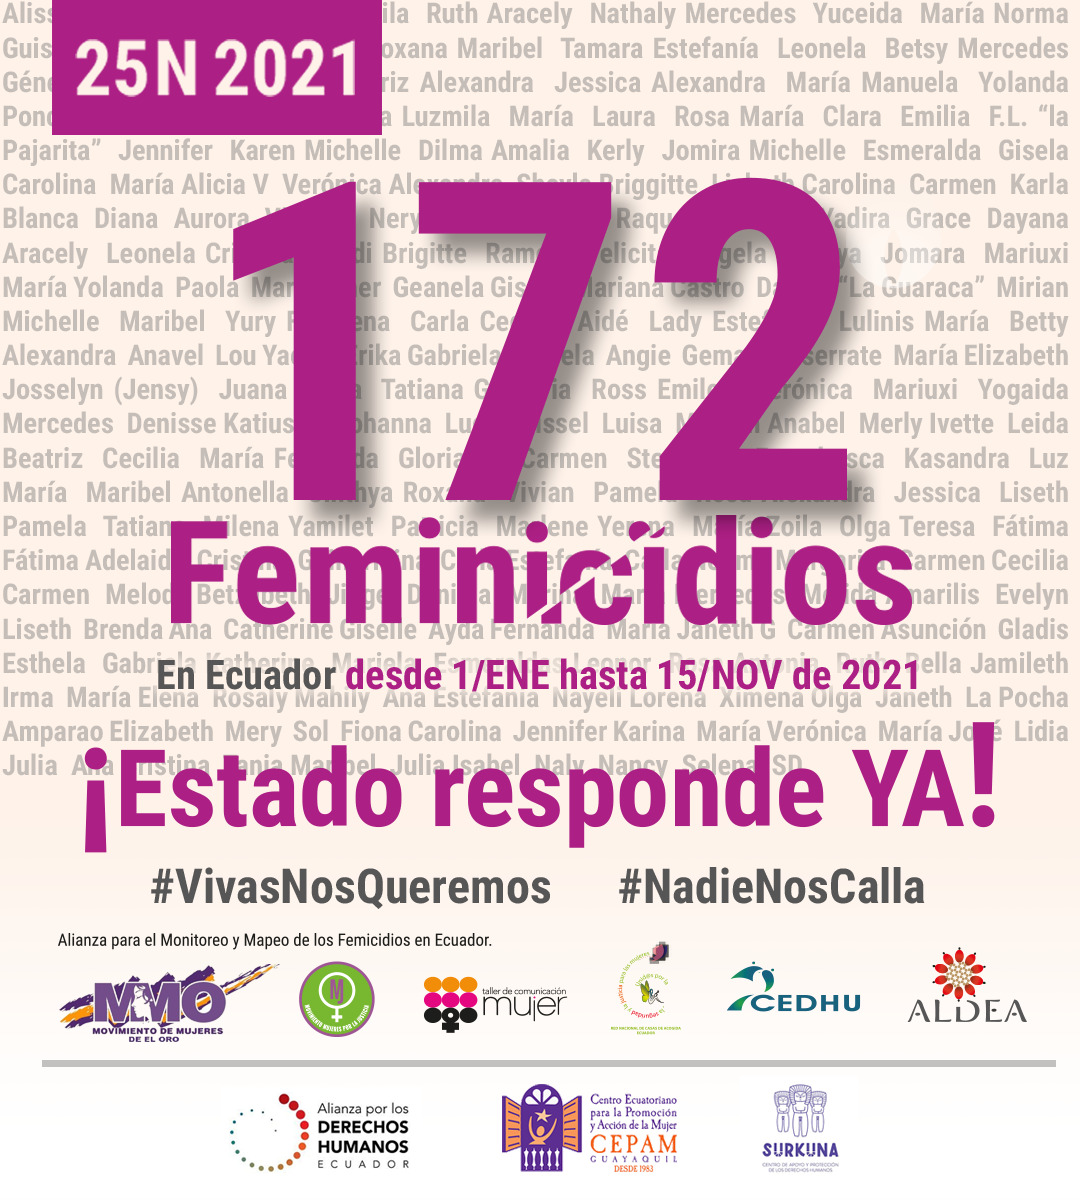 #25N Todavía no acaba el año y se registra el mayor número de #Feminicidios de la historia del Ecuador. 
🖤Cifras escalofriantes y desgarradoras
172 muertes violentas 
5 adultas mayores
5 embarazadas
11 niñas y adolescentes
1022 del 2014 al 2021
#EstadoRespondeYA #NadieNosCalla💜